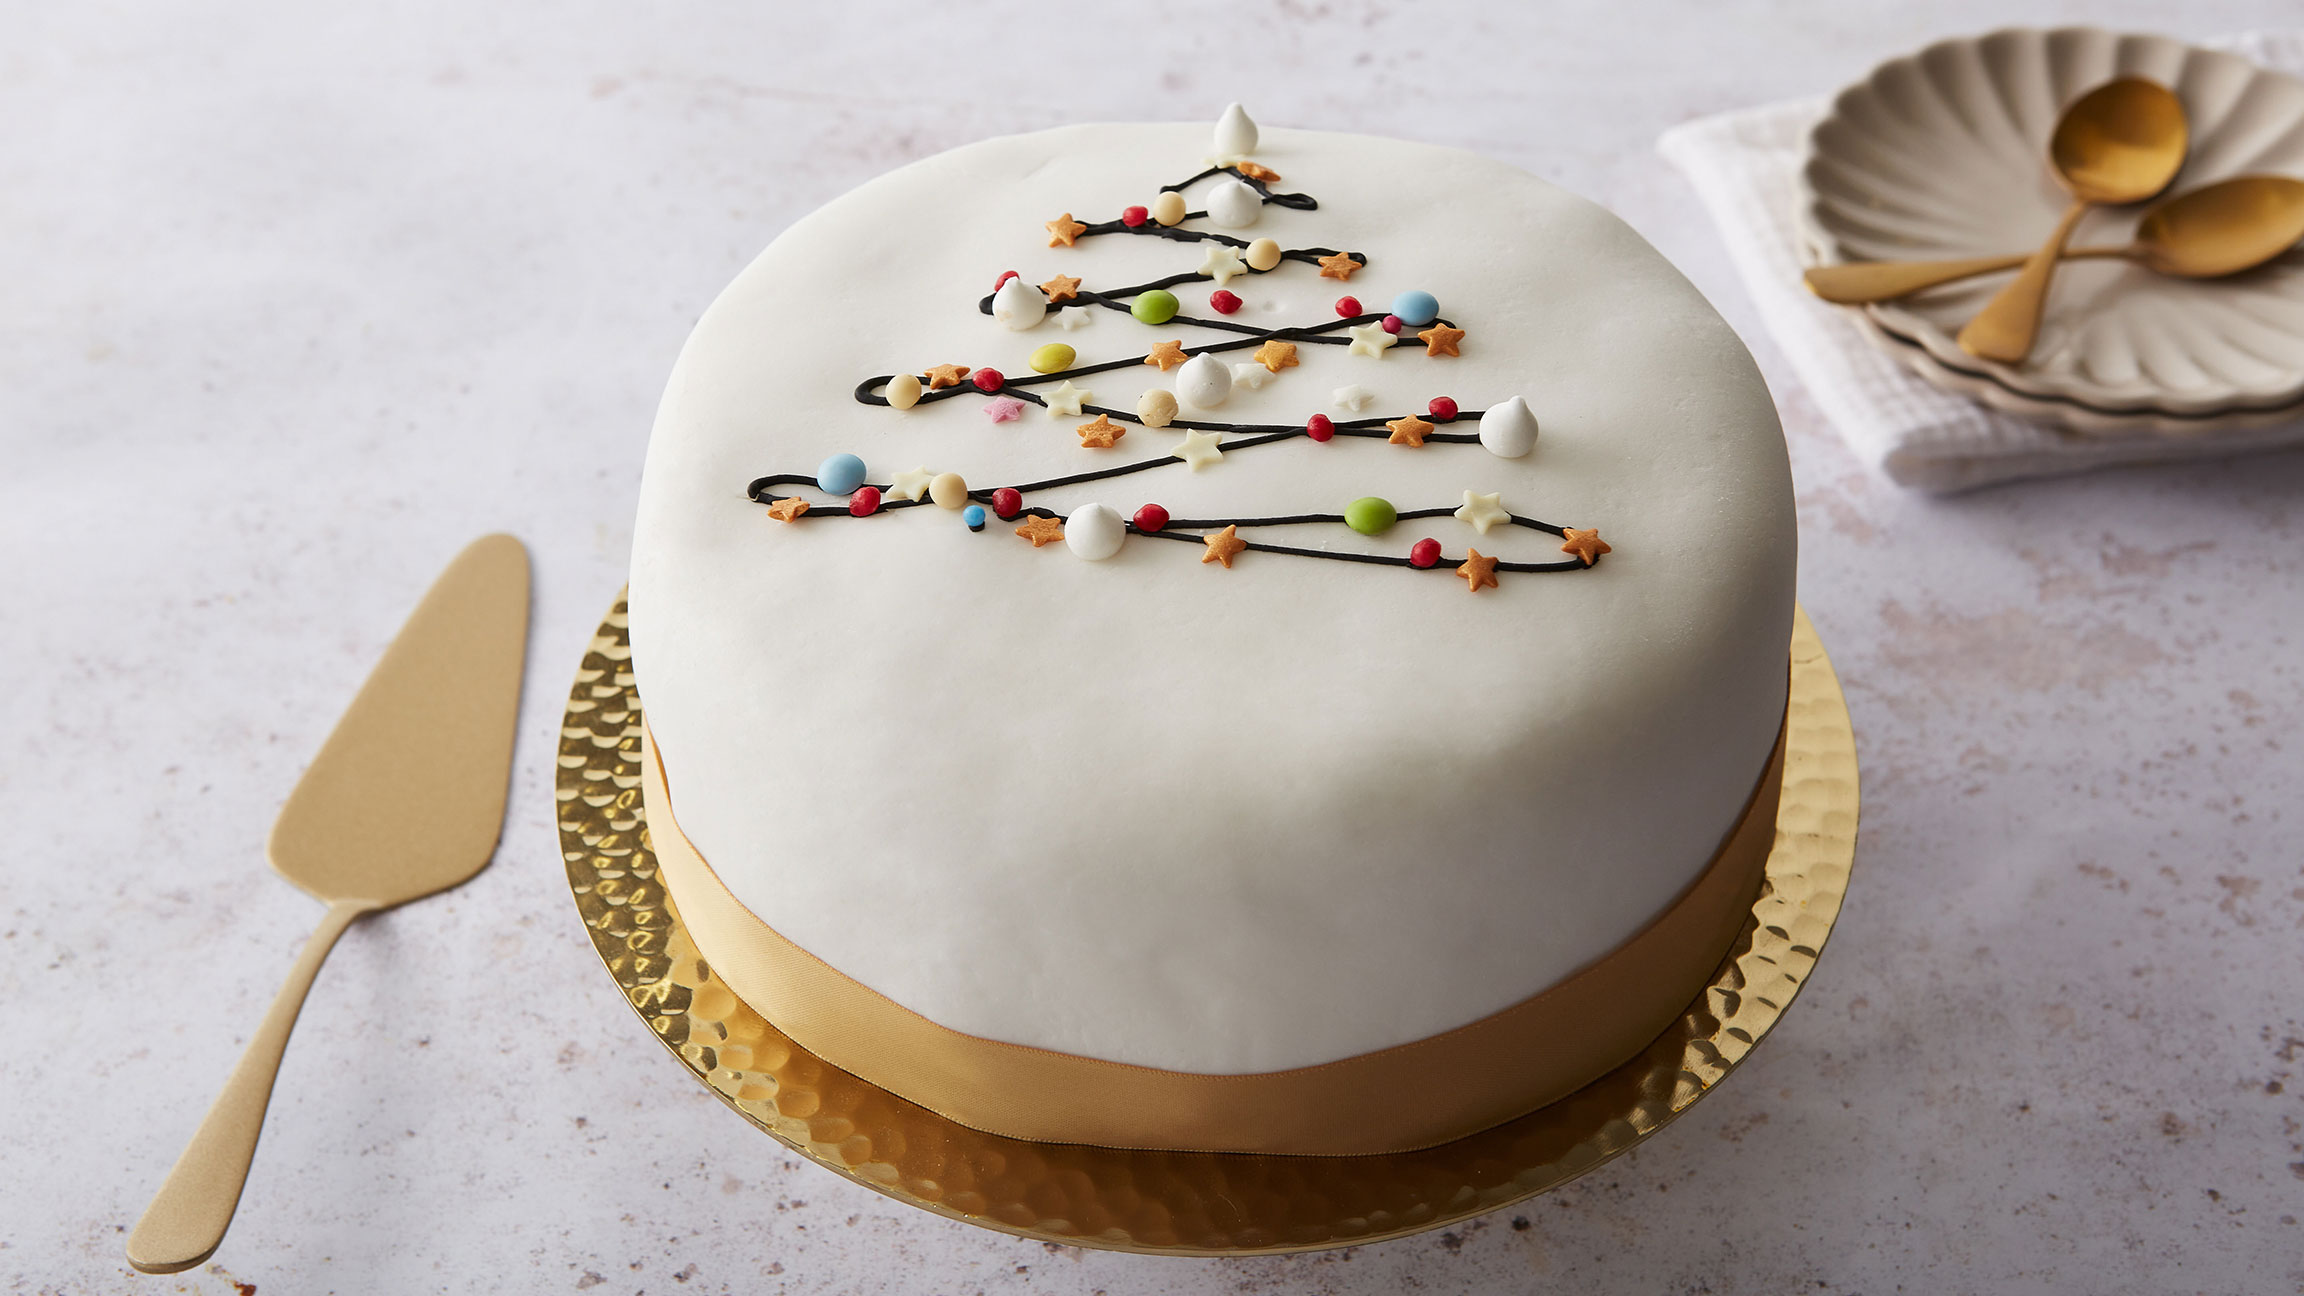 400+ Free Christmas Cake & Christmas Images - Pixabay